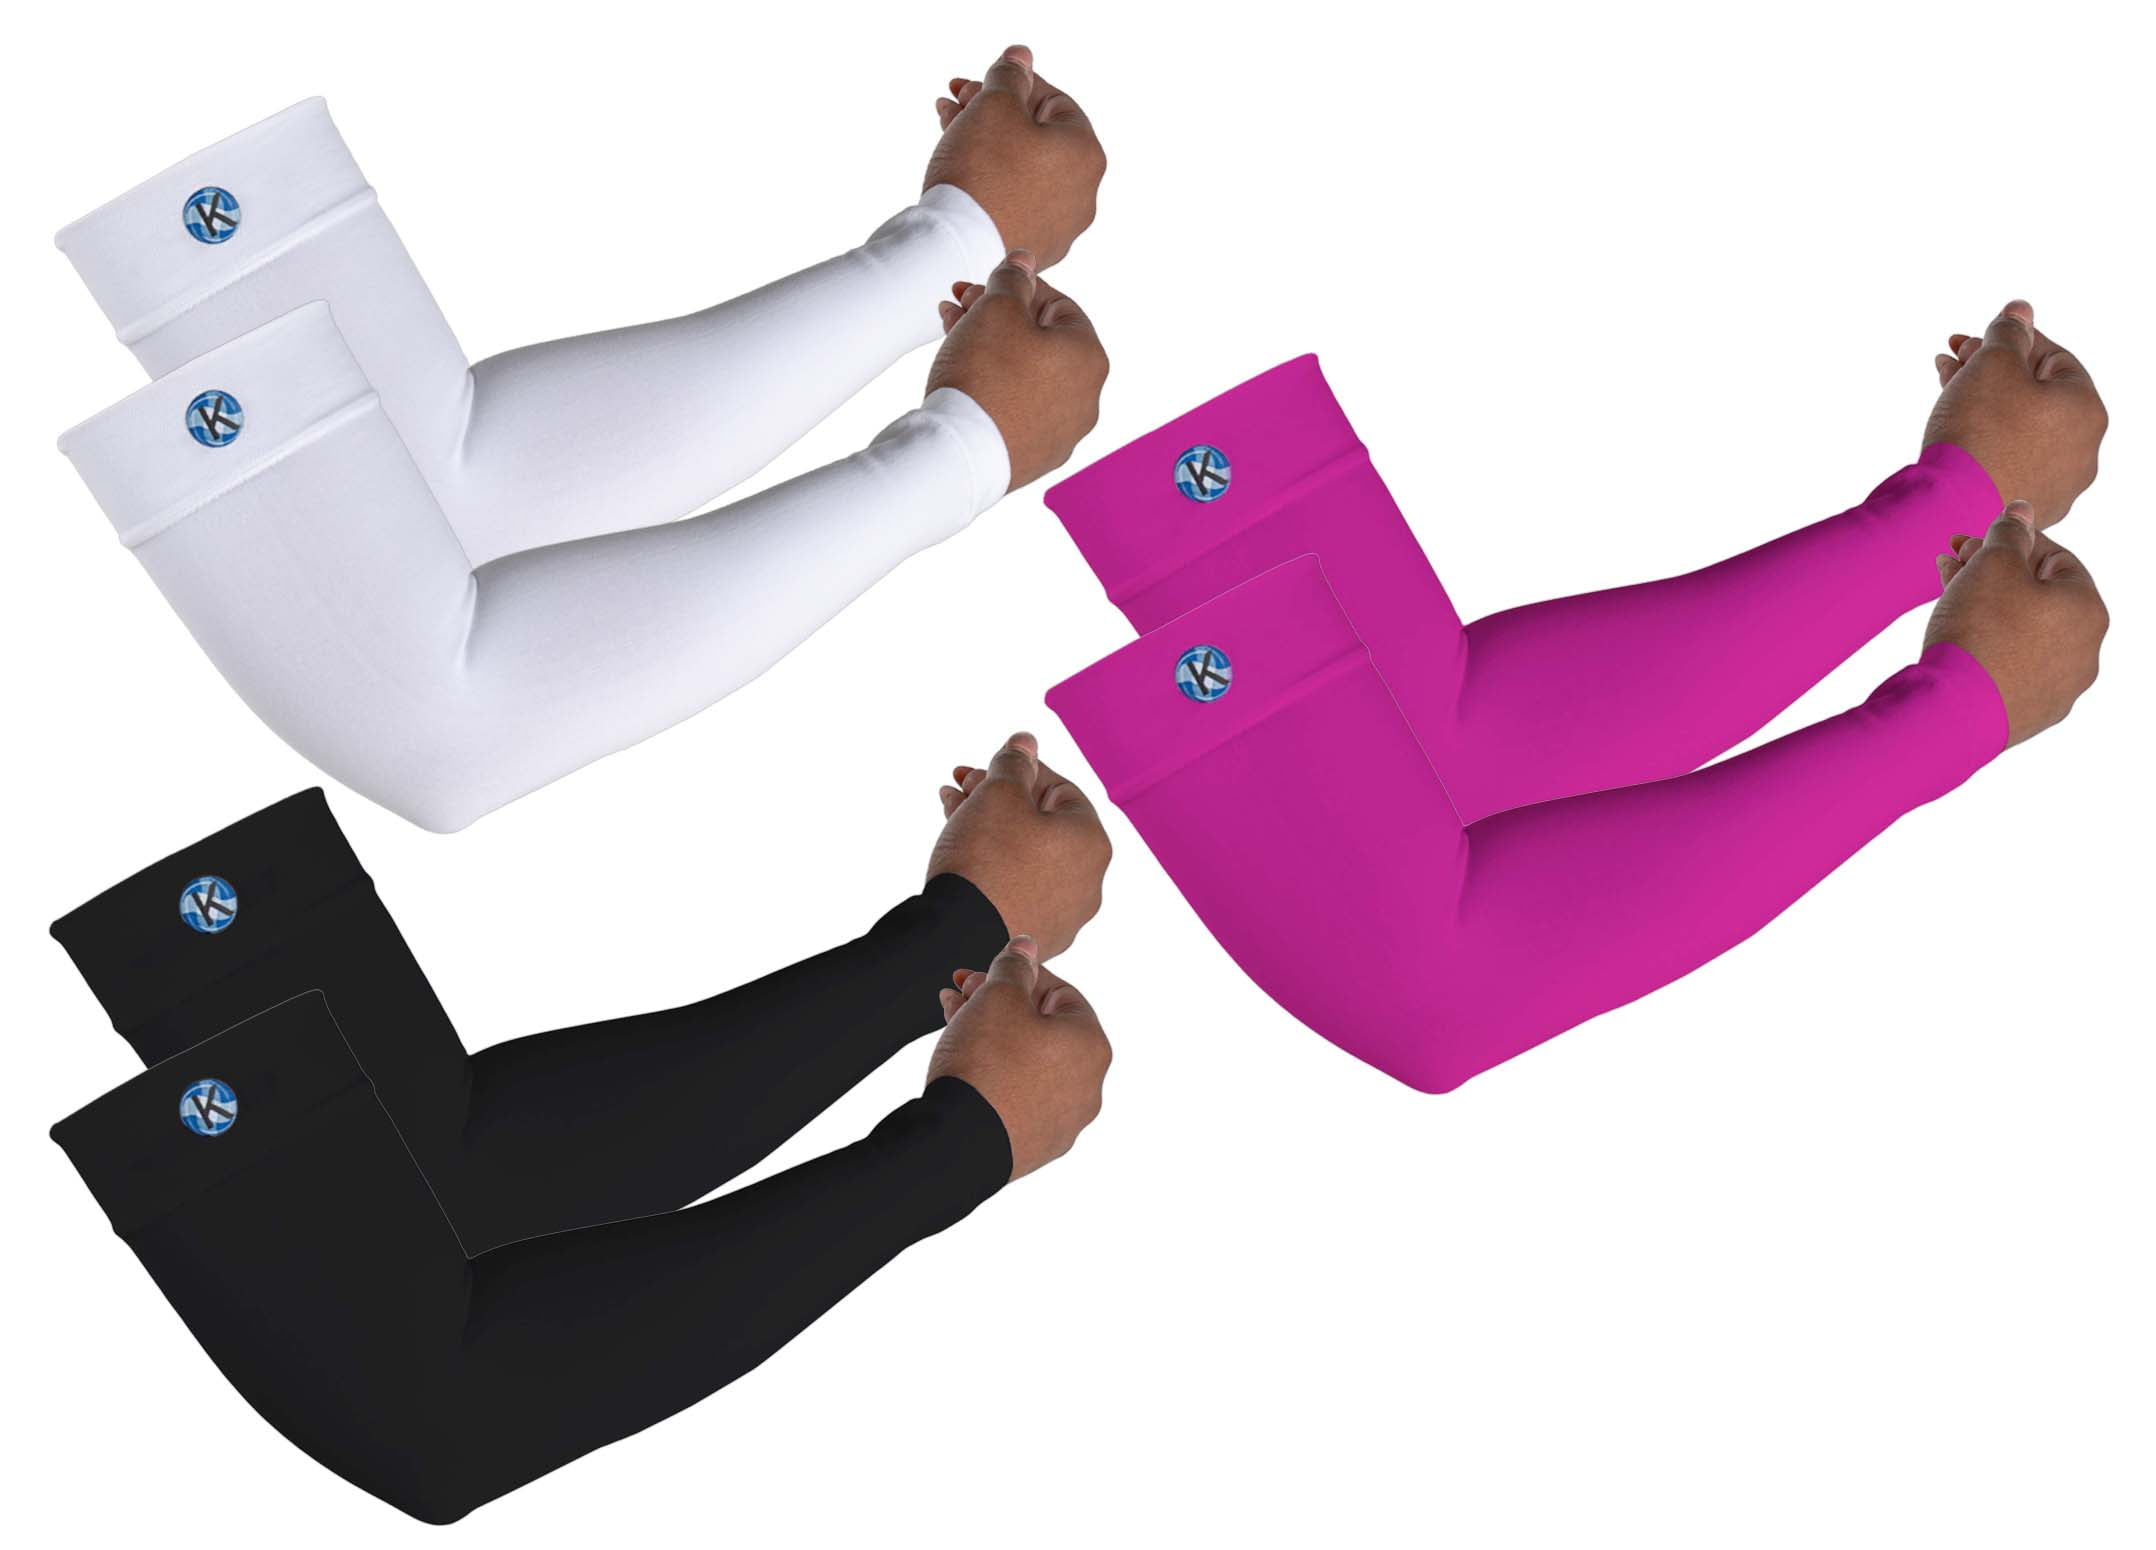 Kinship Comfort Brands Calf Compression Sleeves for Men & Women